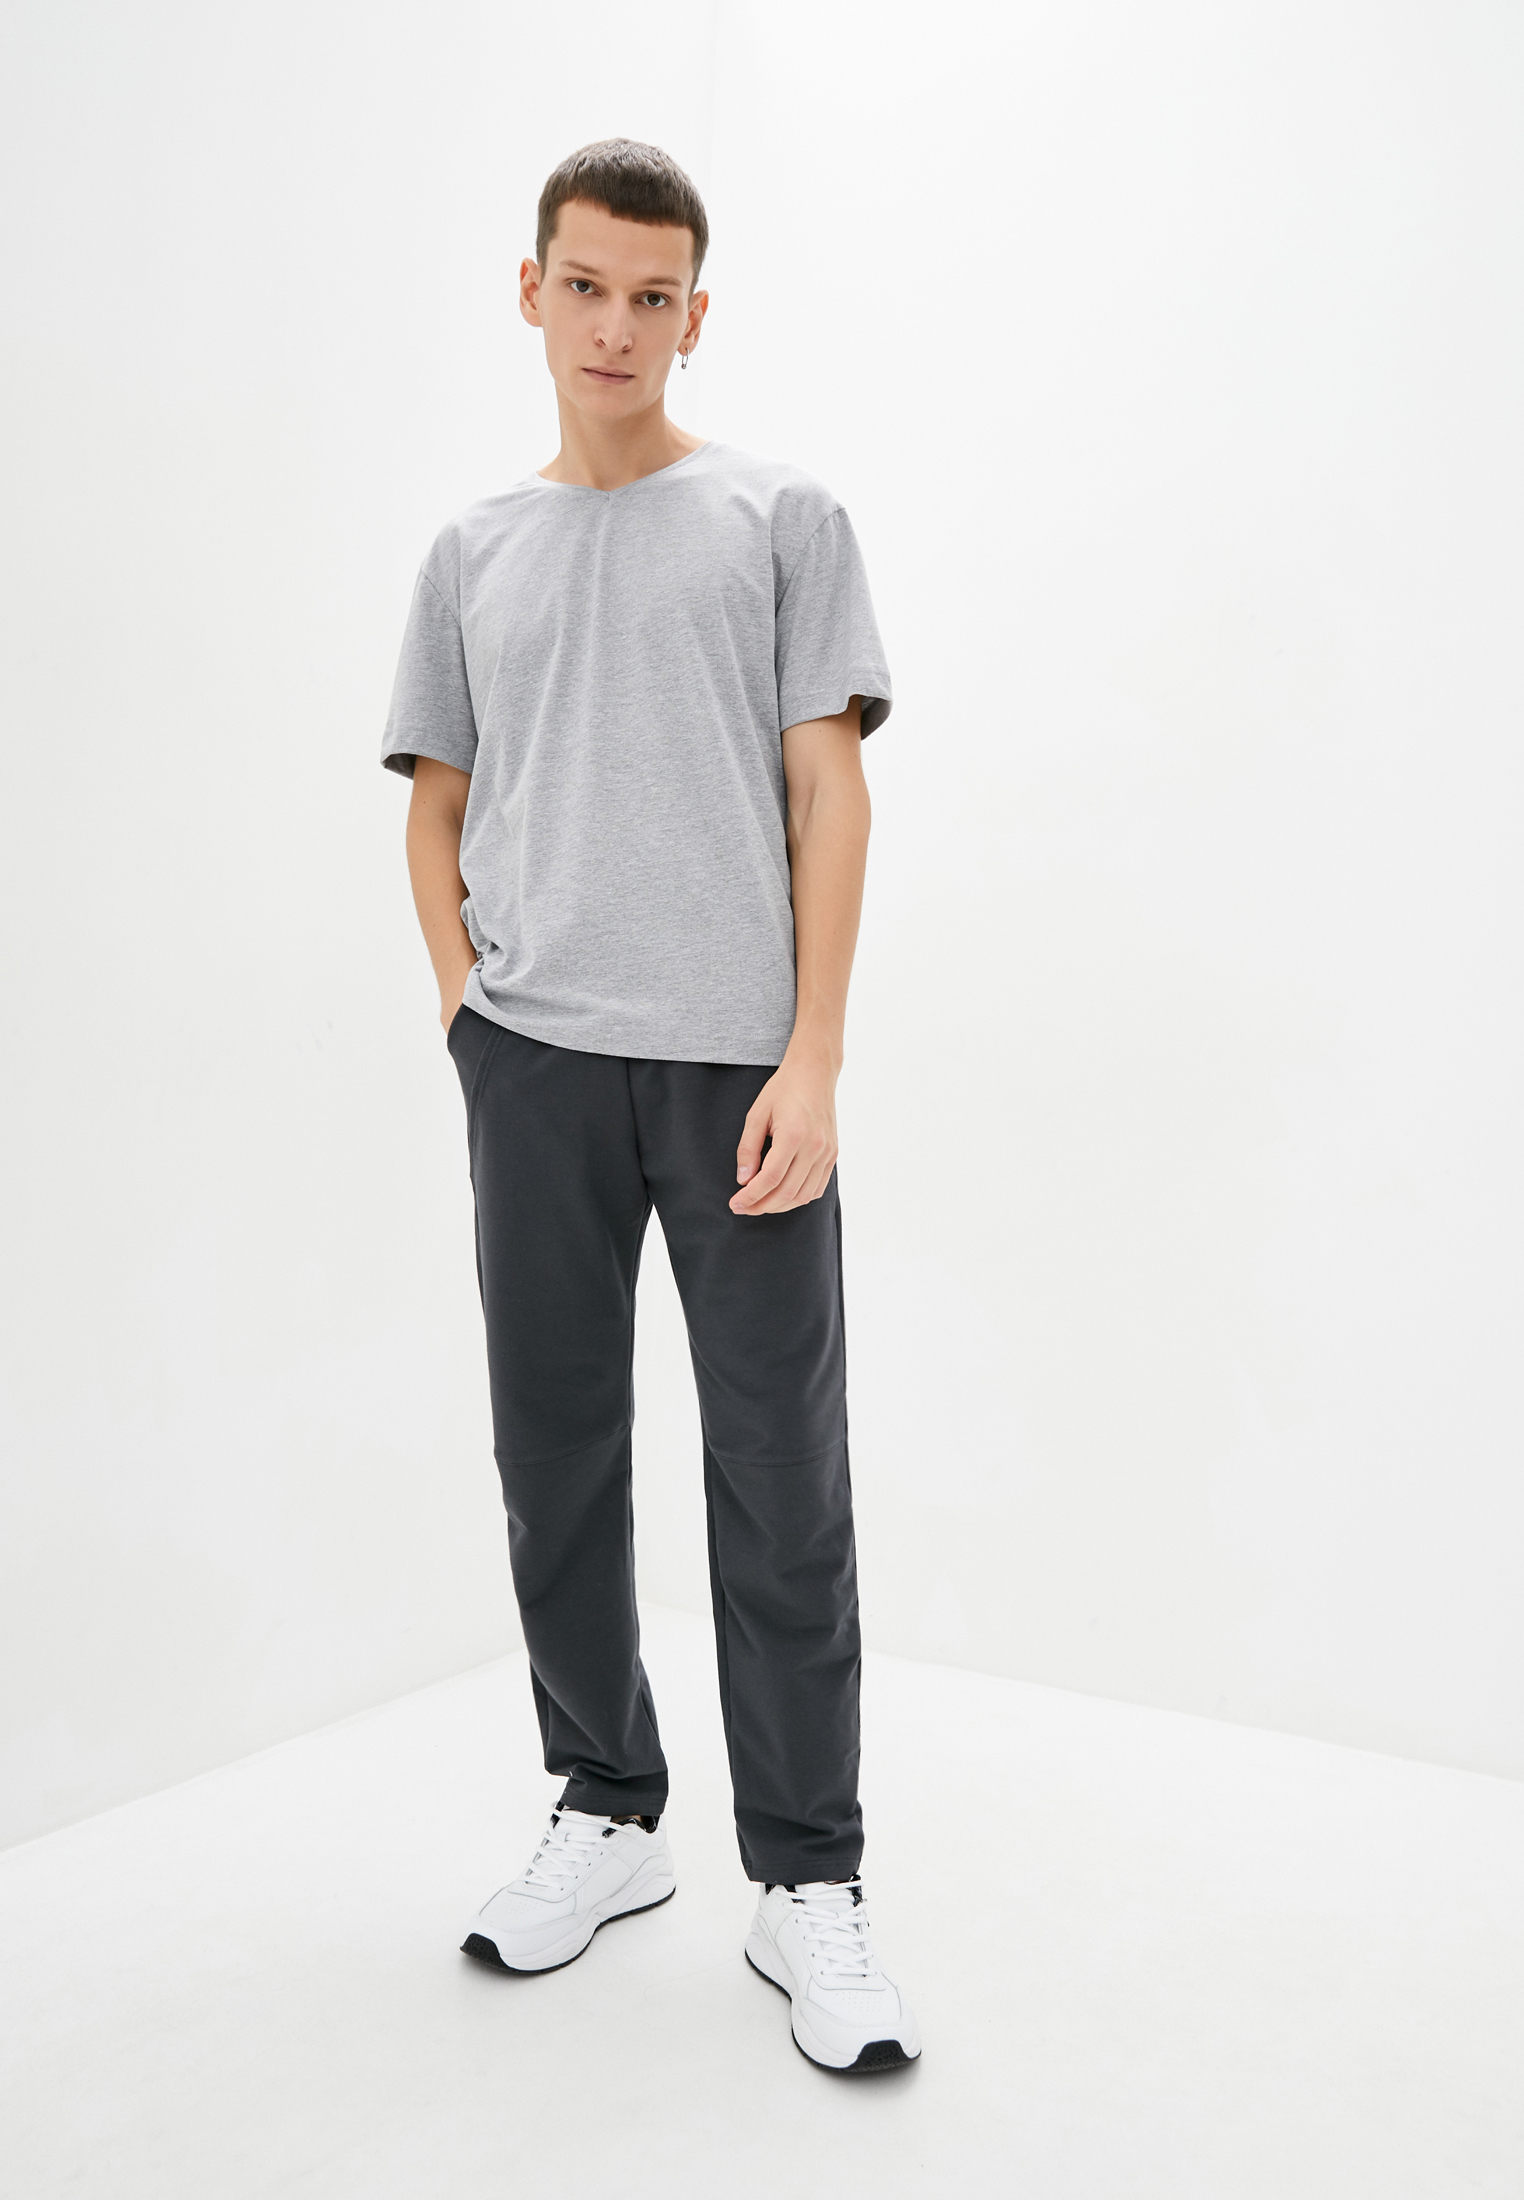 Pants with decorative pockets, vendor code: 1040-02.1, color: Dark grey